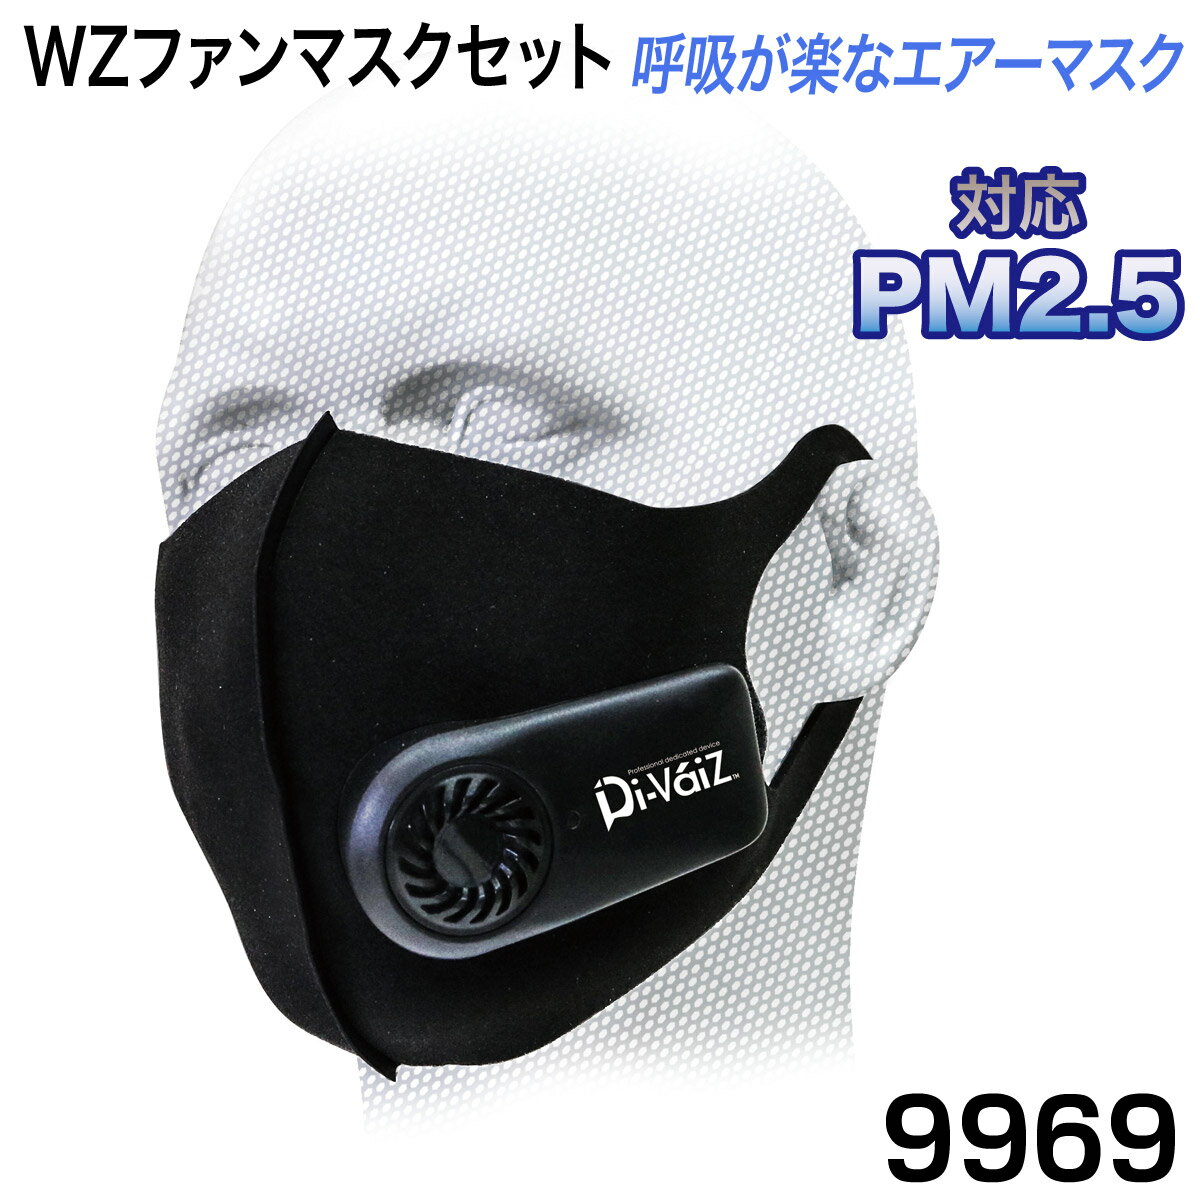 中国産業 ファン付きマスク 9969 フルセット PM2.5対応 ジェットファン 高機能モーター 呼吸が楽なエアーマスク 花粉・ほこり・風邪飛沫対策に 快適呼吸マスク